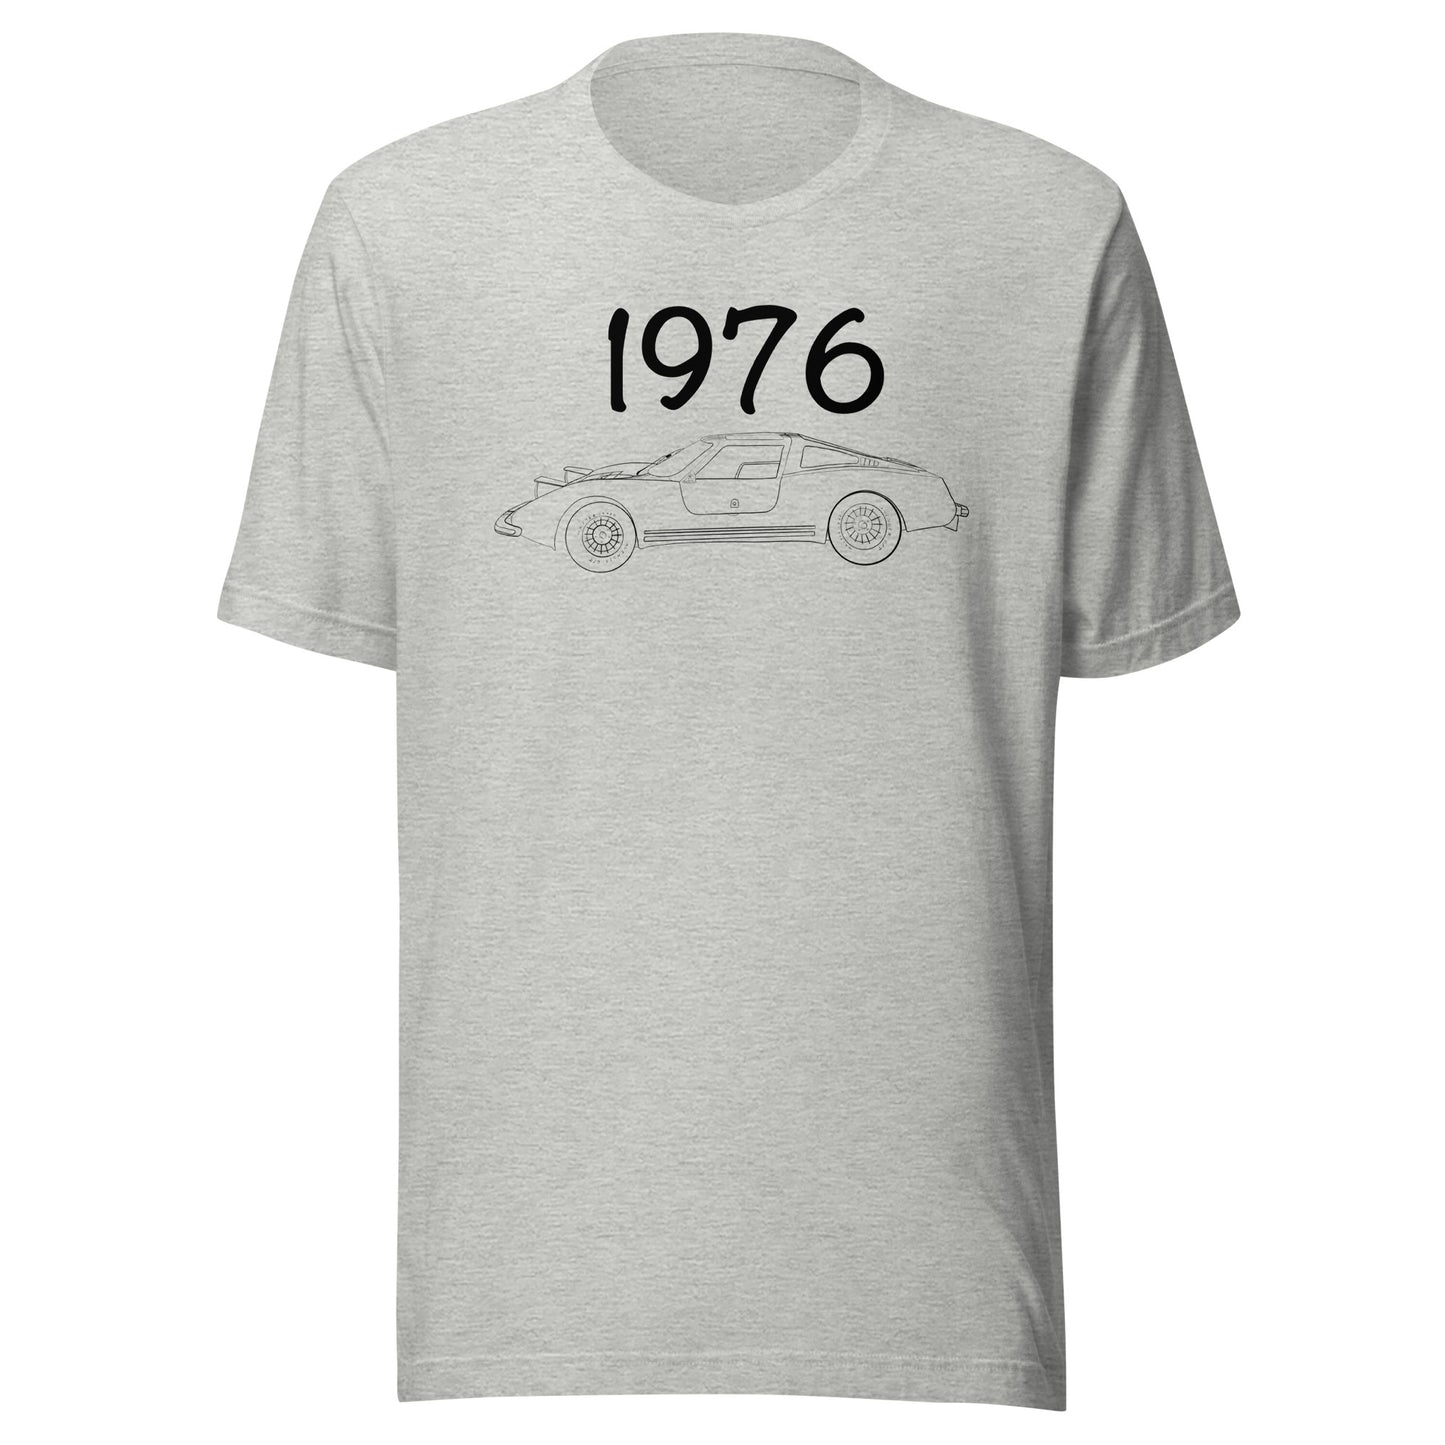 Eva 1976 t-shirt